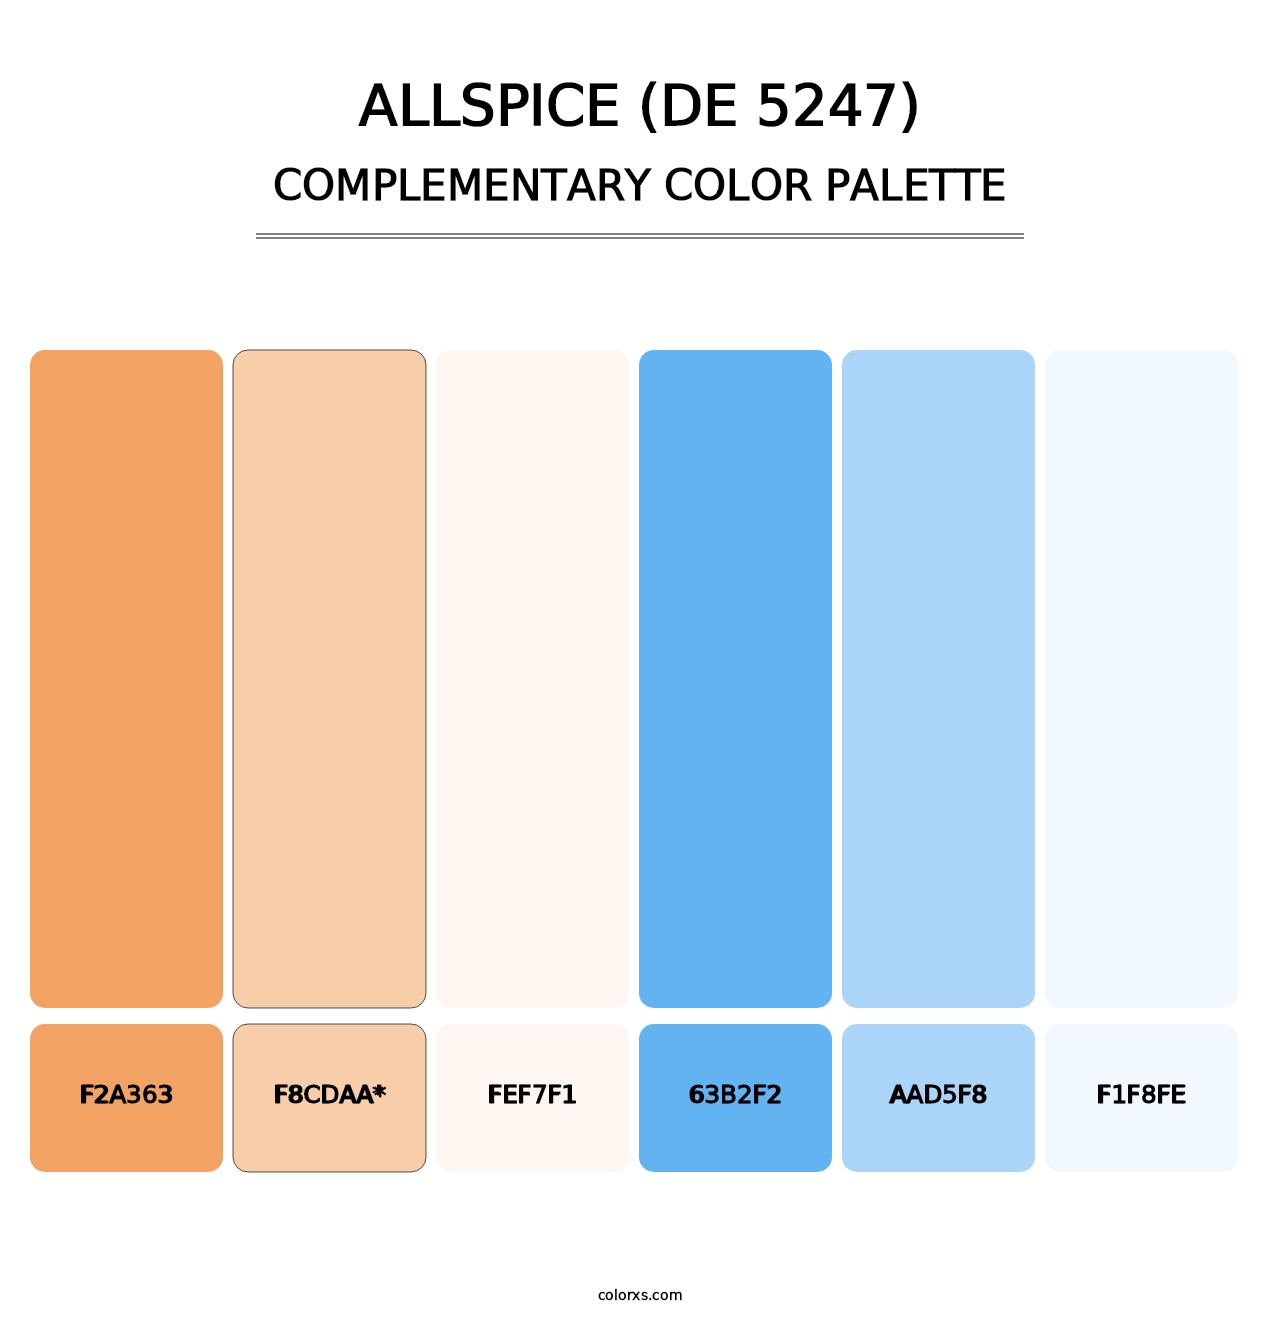 Allspice (DE 5247) - Complementary Color Palette